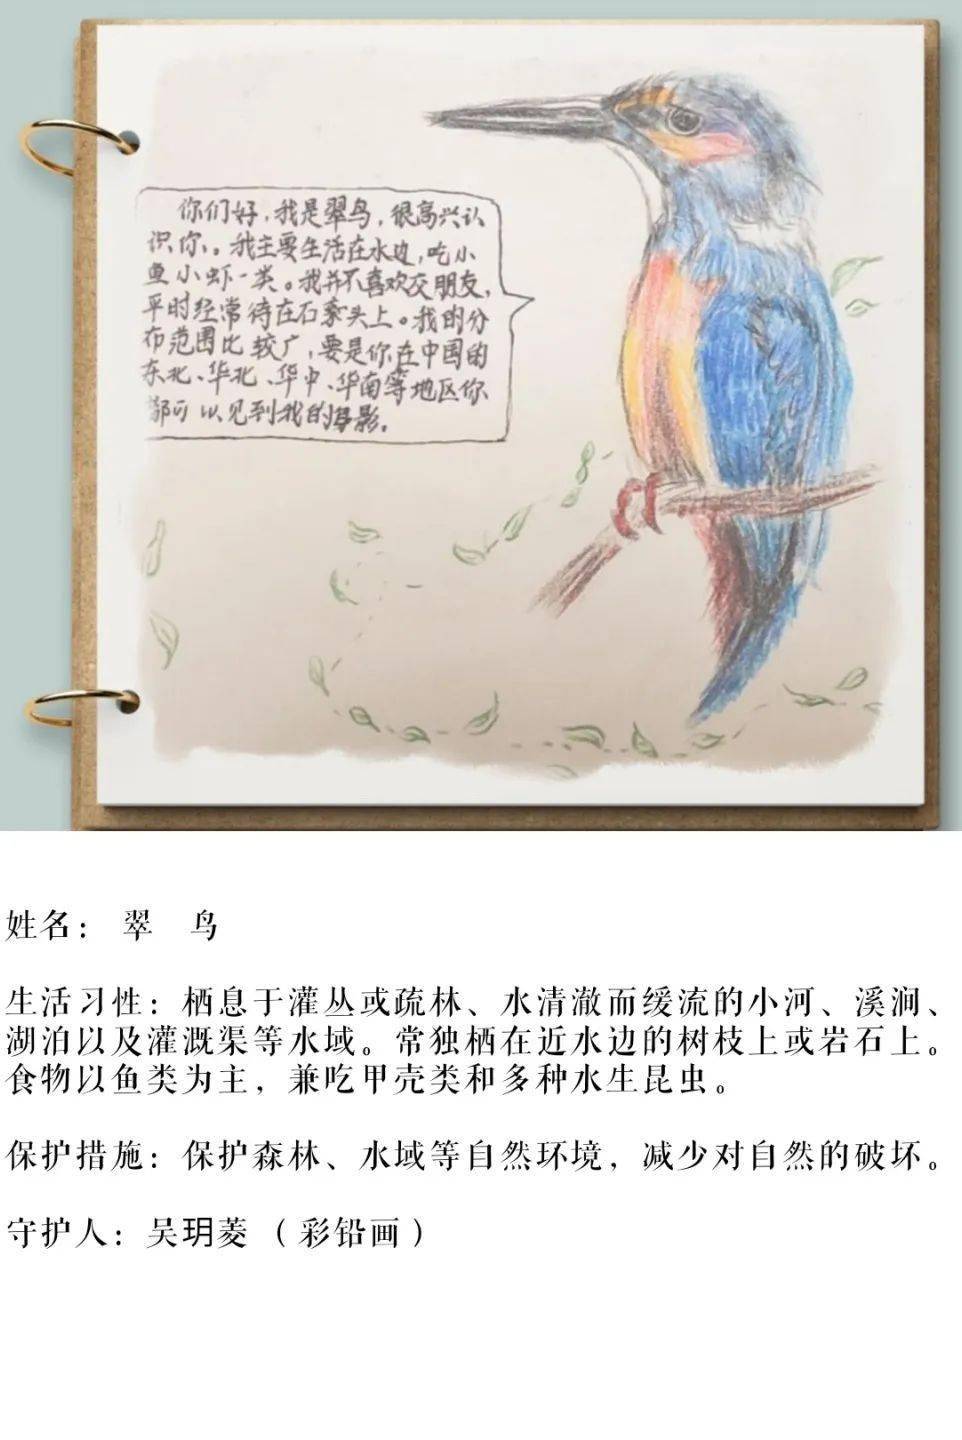 翠鸟手抄报三年级图片